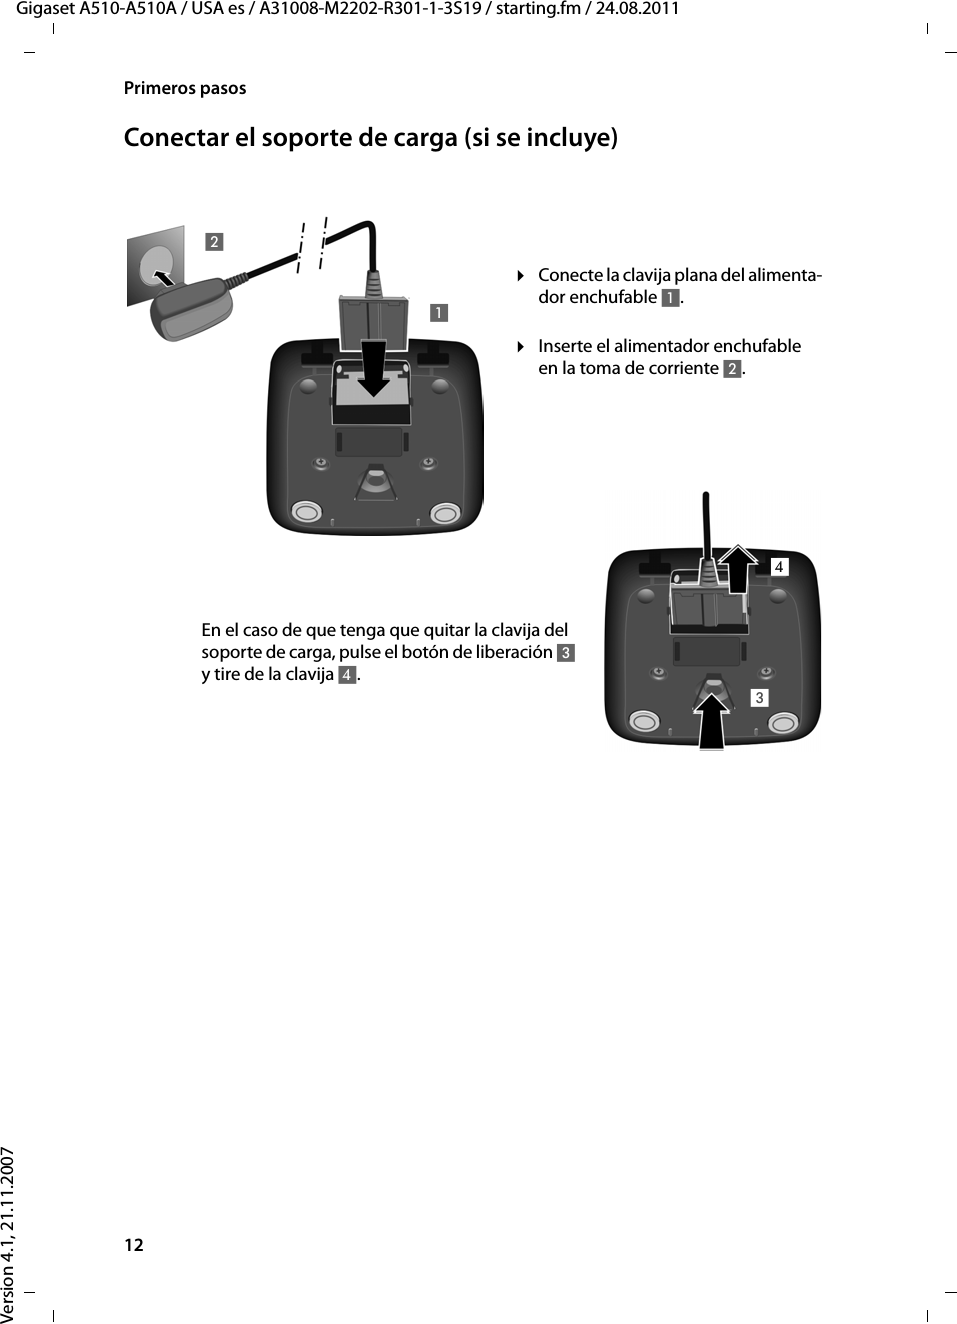 12Primeros pasosGigaset A510-A510A / USA es / A31008-M2202-R301-1-3S19 / starting.fm / 24.08.2011Version 4.1, 21.11.2007Conectar el soporte de carga (si se incluye)¤Inserte el alimentador enchufable en la toma de corriente 2.¤Conecte la clavija plana del alimenta-dor enchufable 1.En el caso de que tenga que quitar la clavija del soporte de carga, pulse el botón de liberación 3 y tire de la clavija 4. 1234